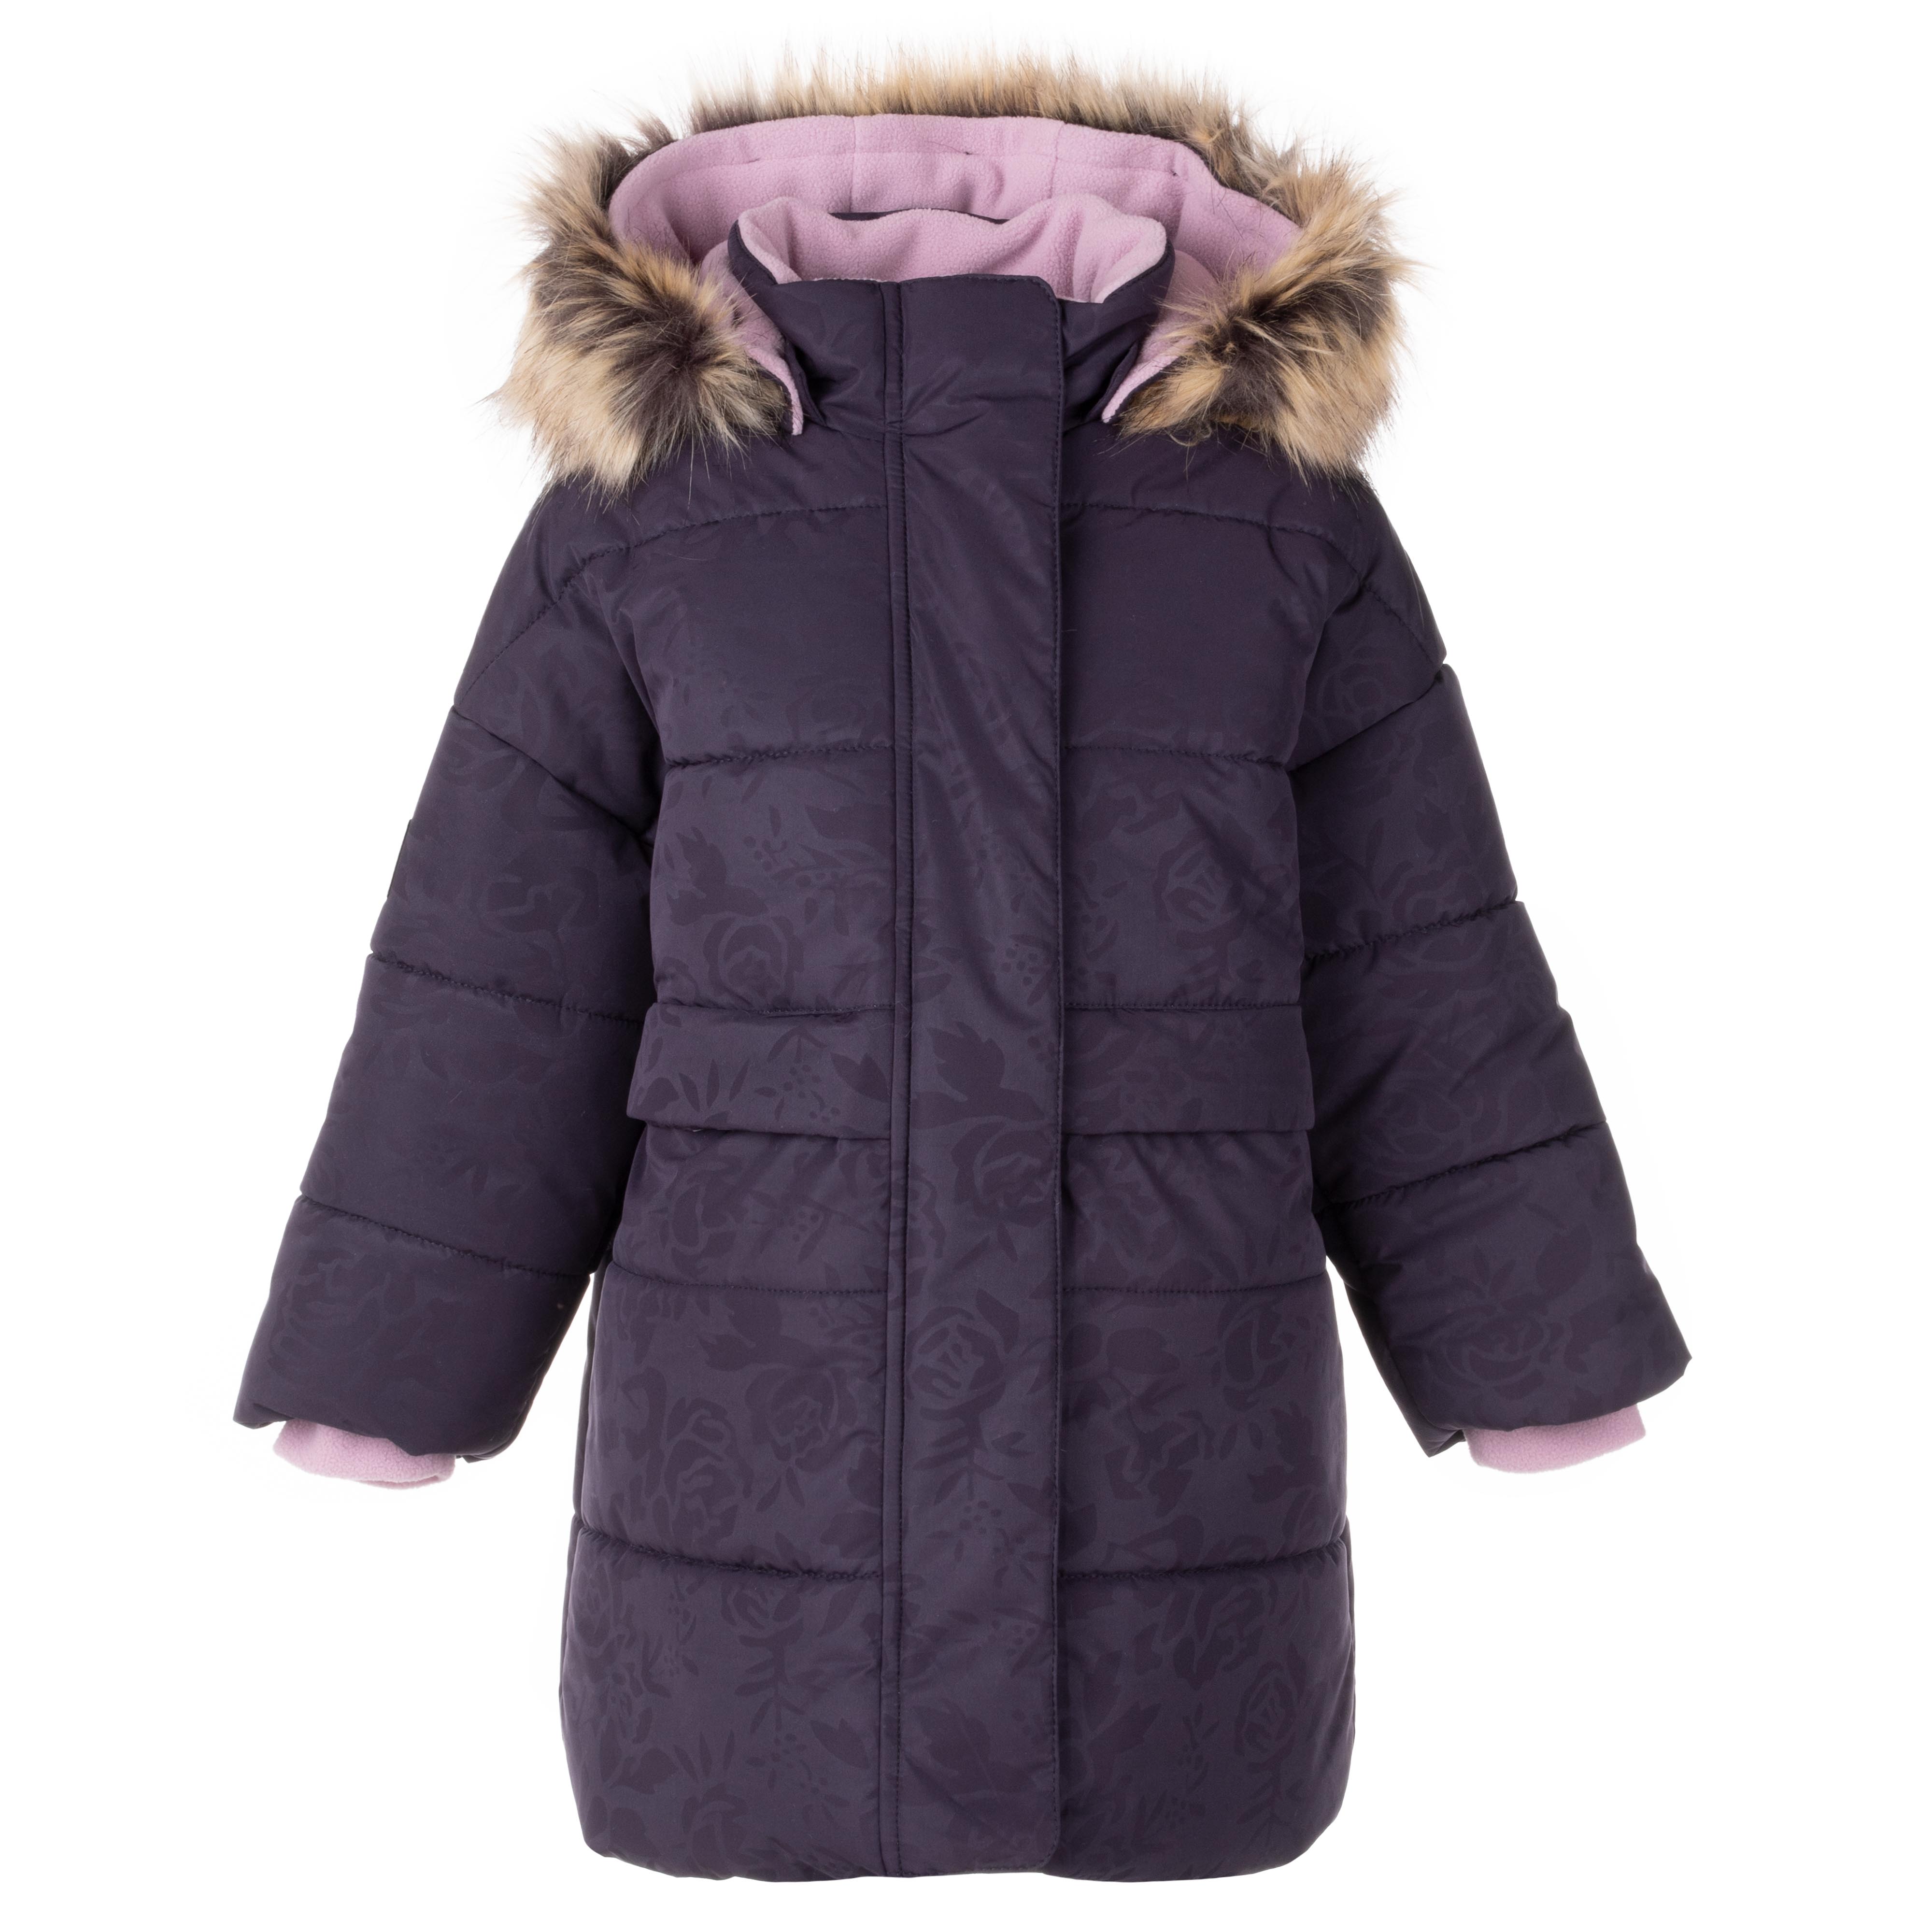 Пальто детское KERRY K23433, фиолетовый, 128